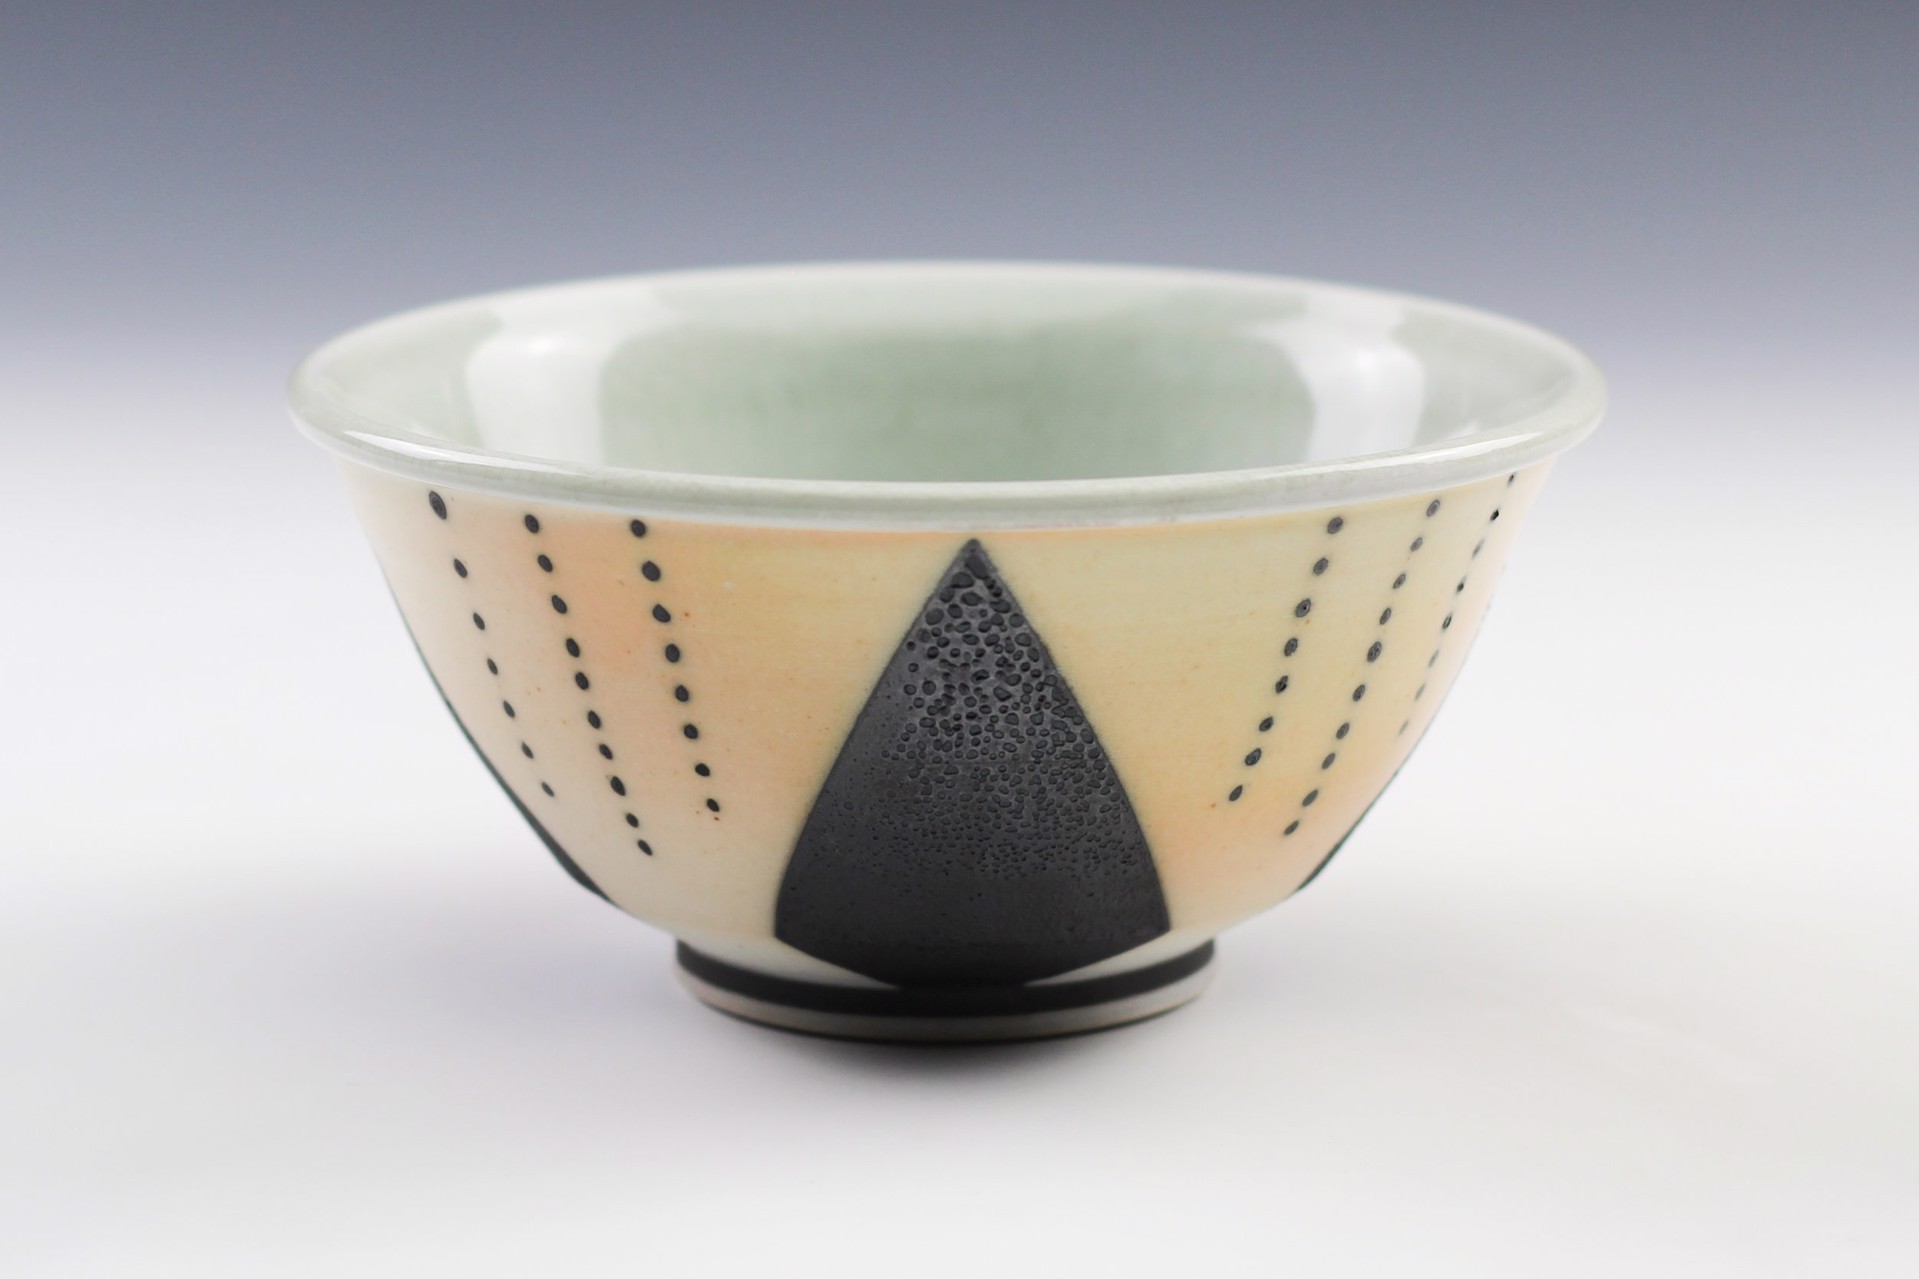 Bowl by Joanne Kirkland